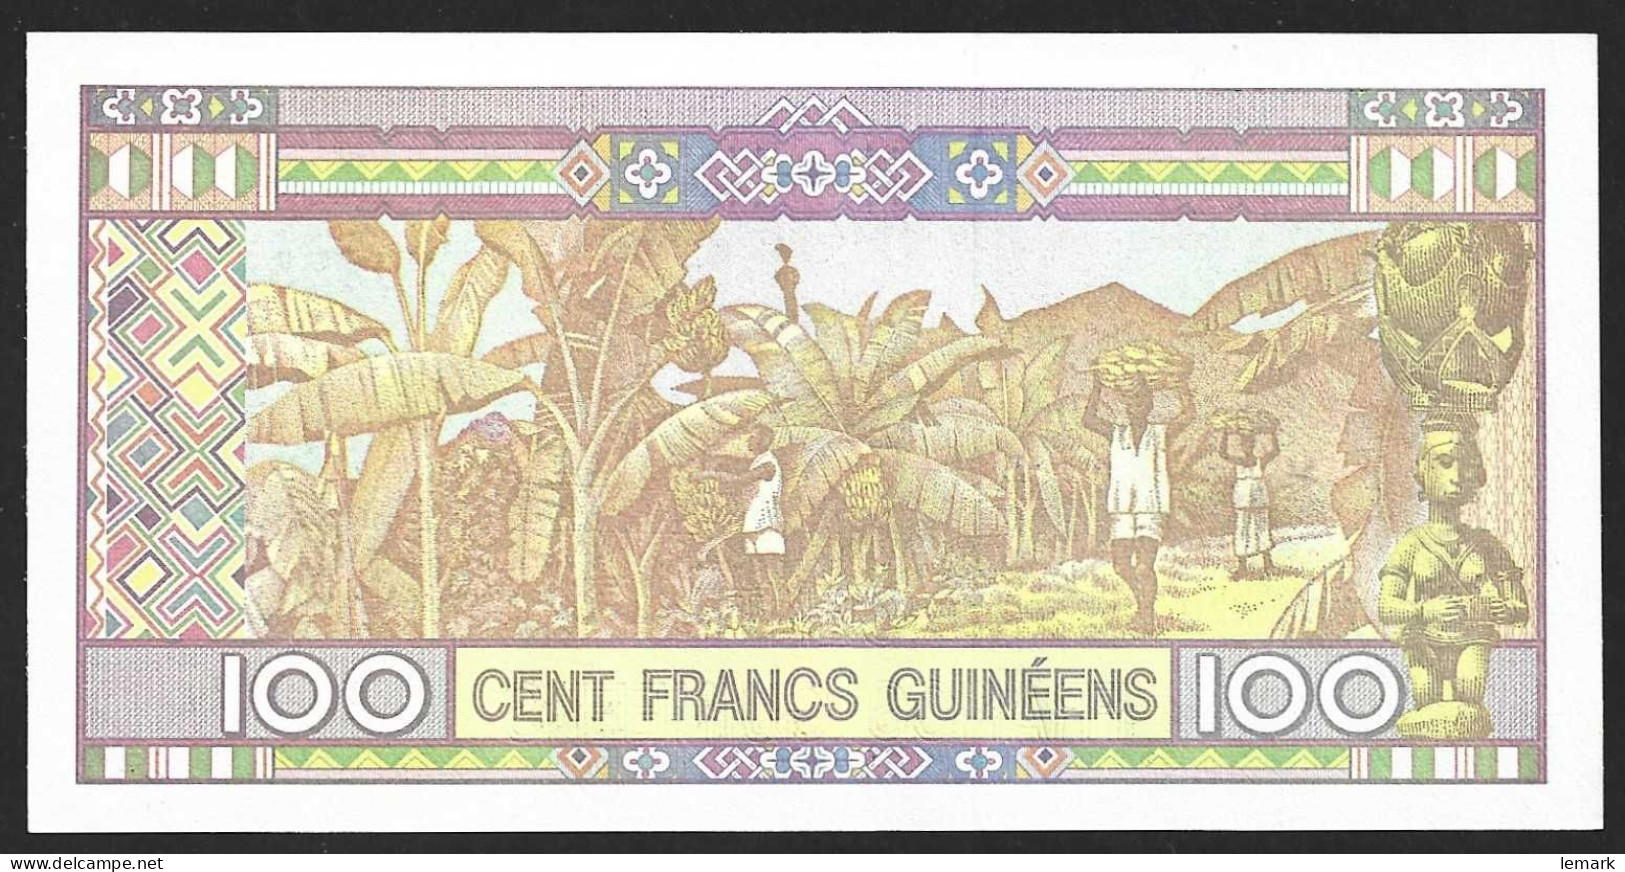 Guinea 100 Francs 2015 P47 UNC - Guinee